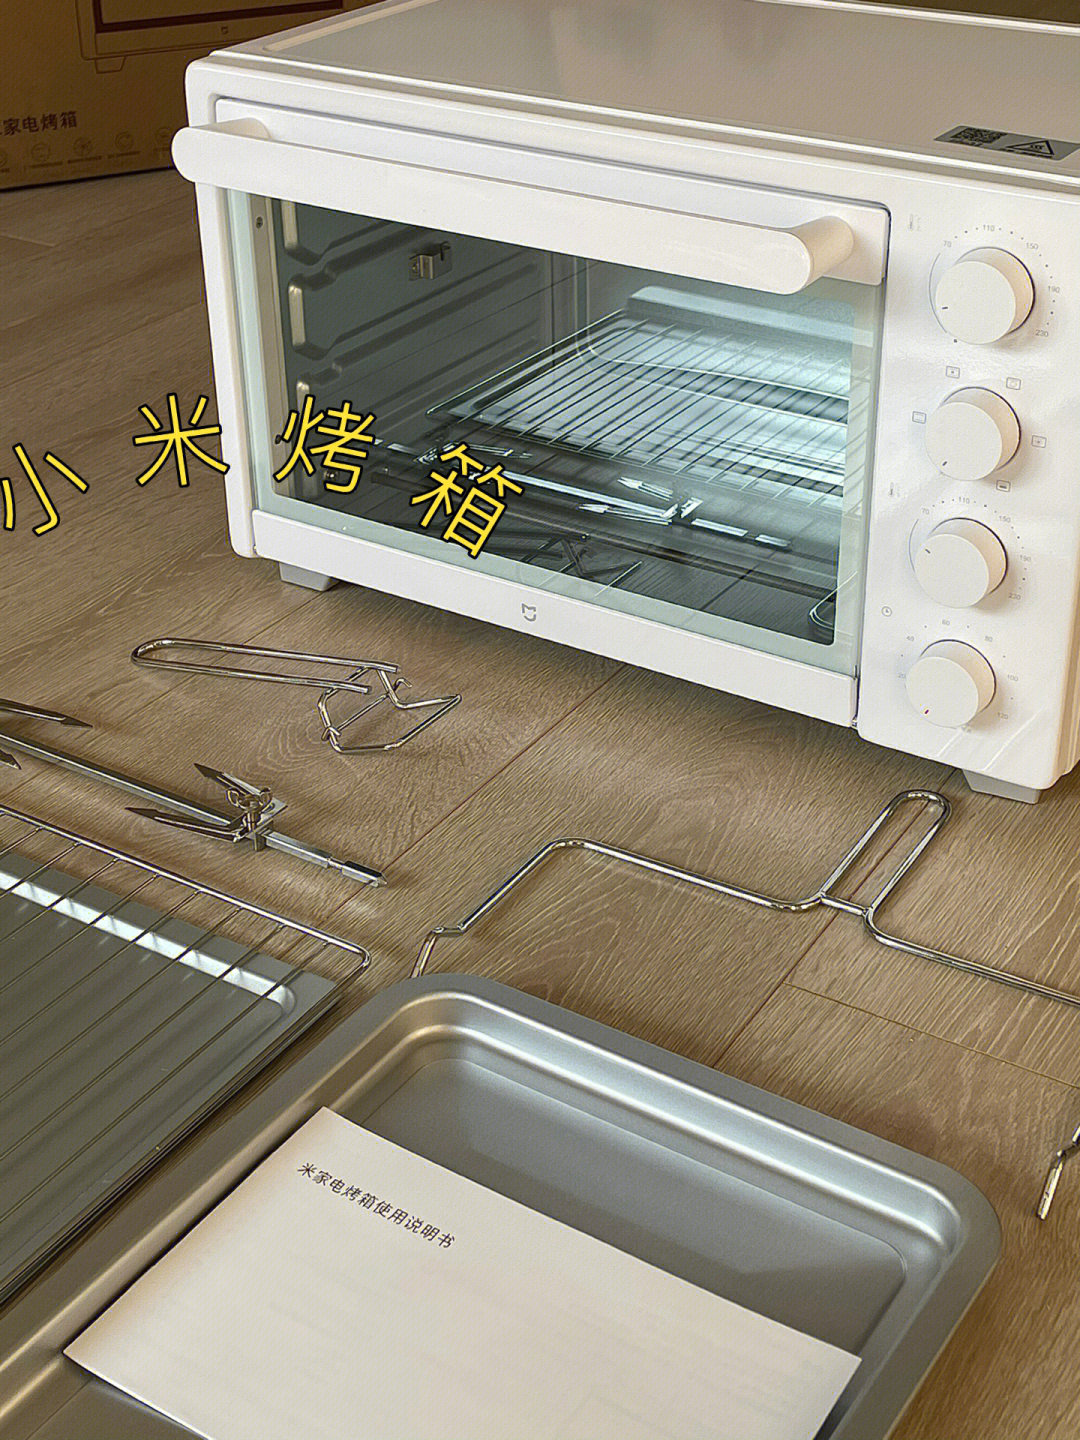 小米烤箱模式图标解说图片